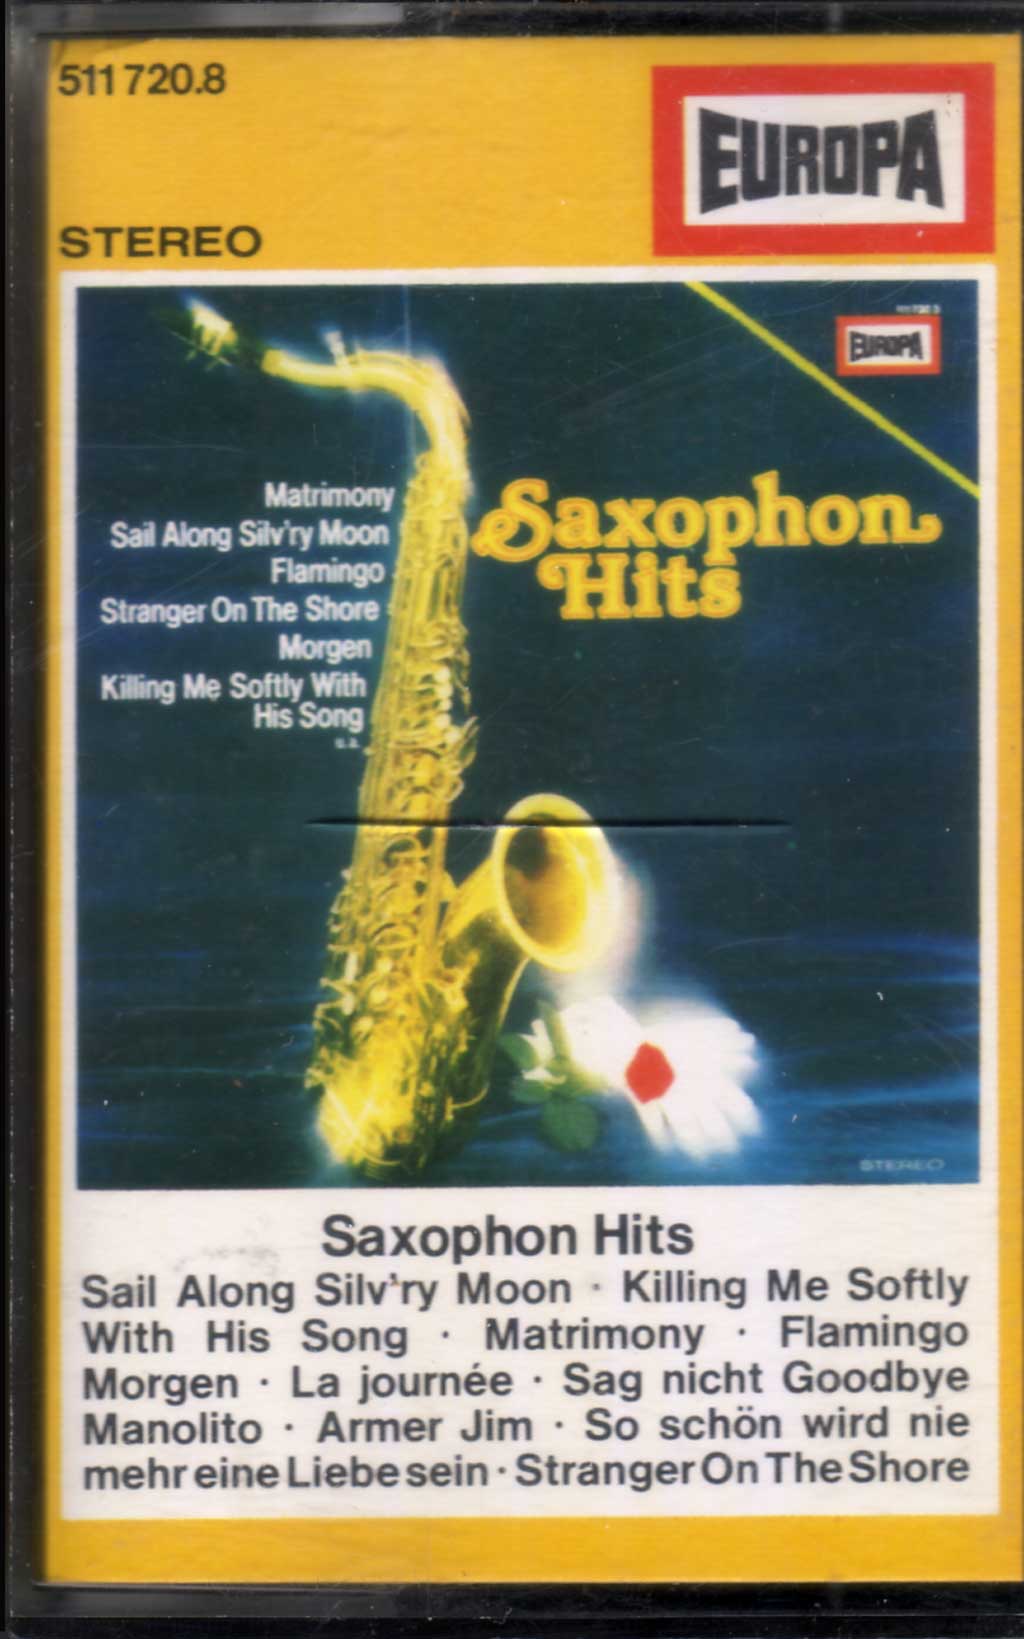 Legenden mit Saxophon hits